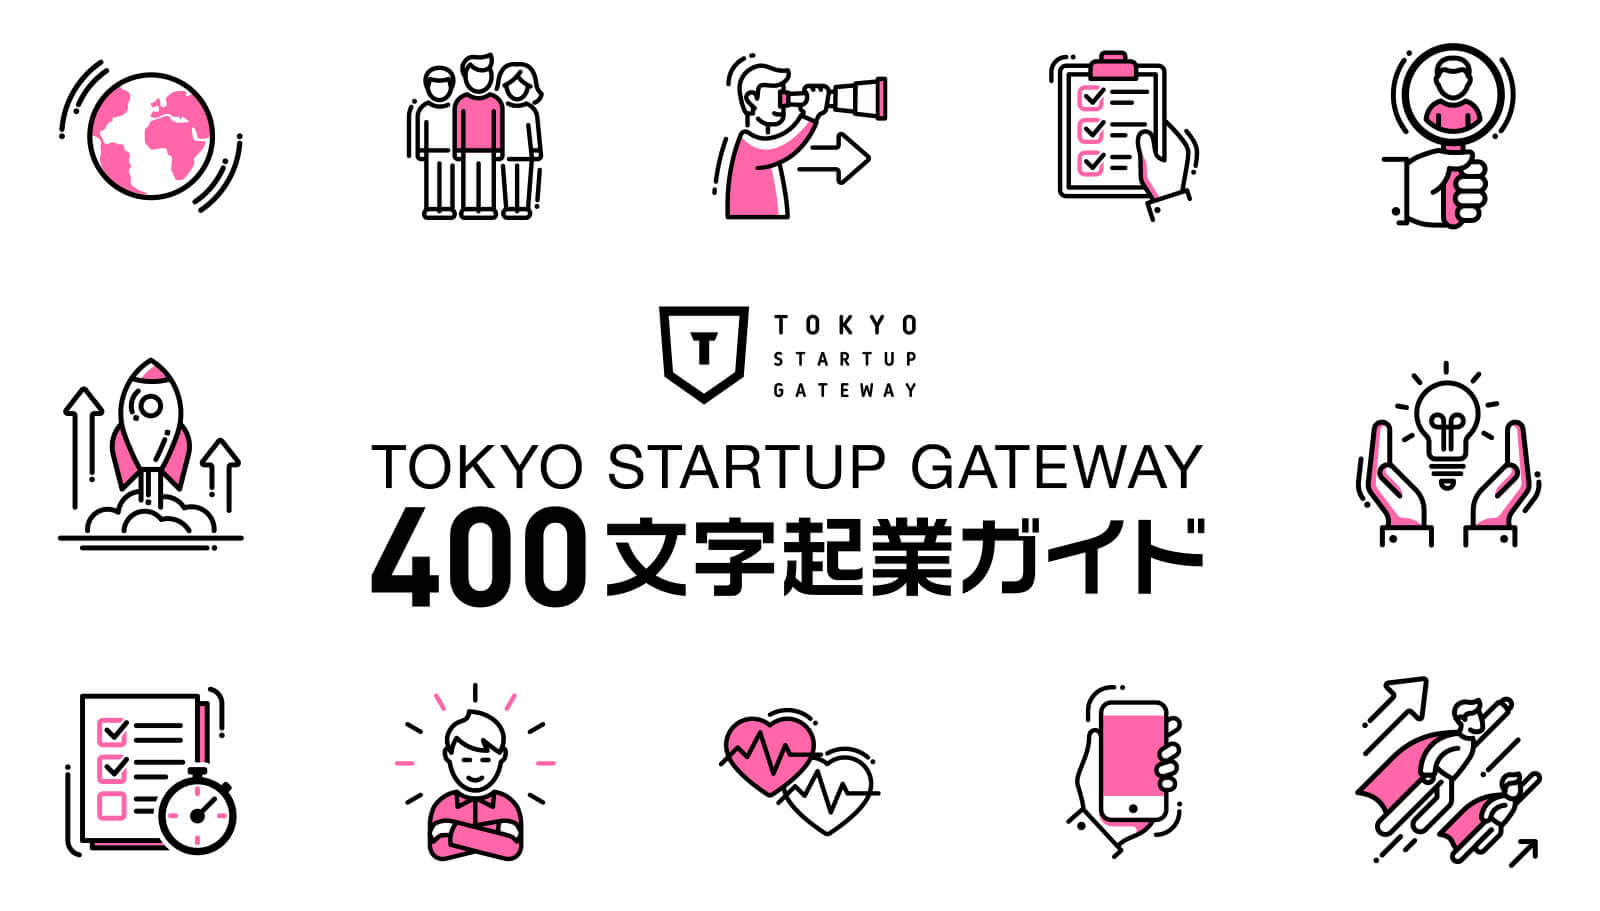 TOKYO STARTUP GATEWAY 400文字起業ガイド